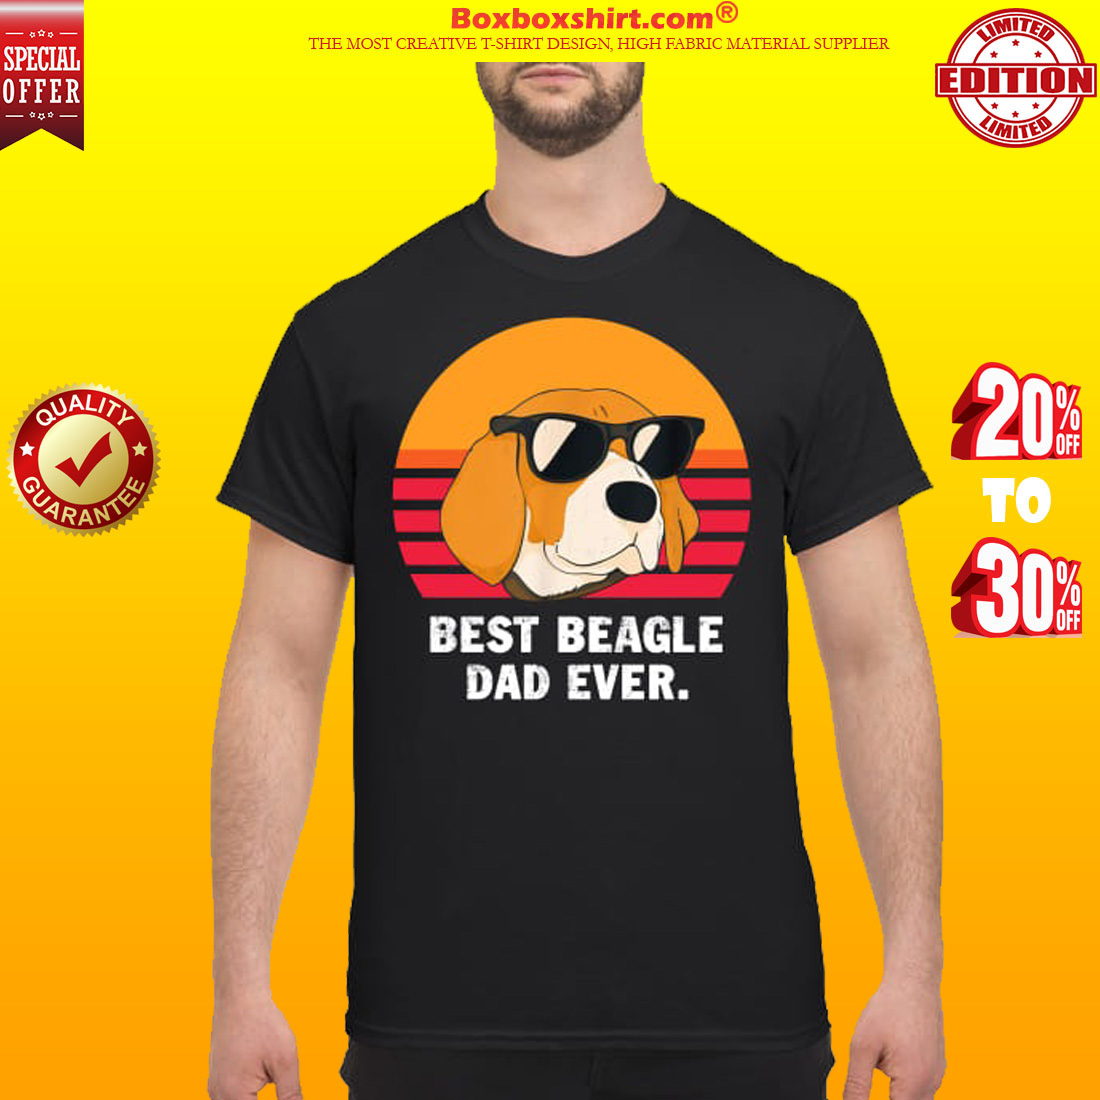 Best beagle dad ever shirt